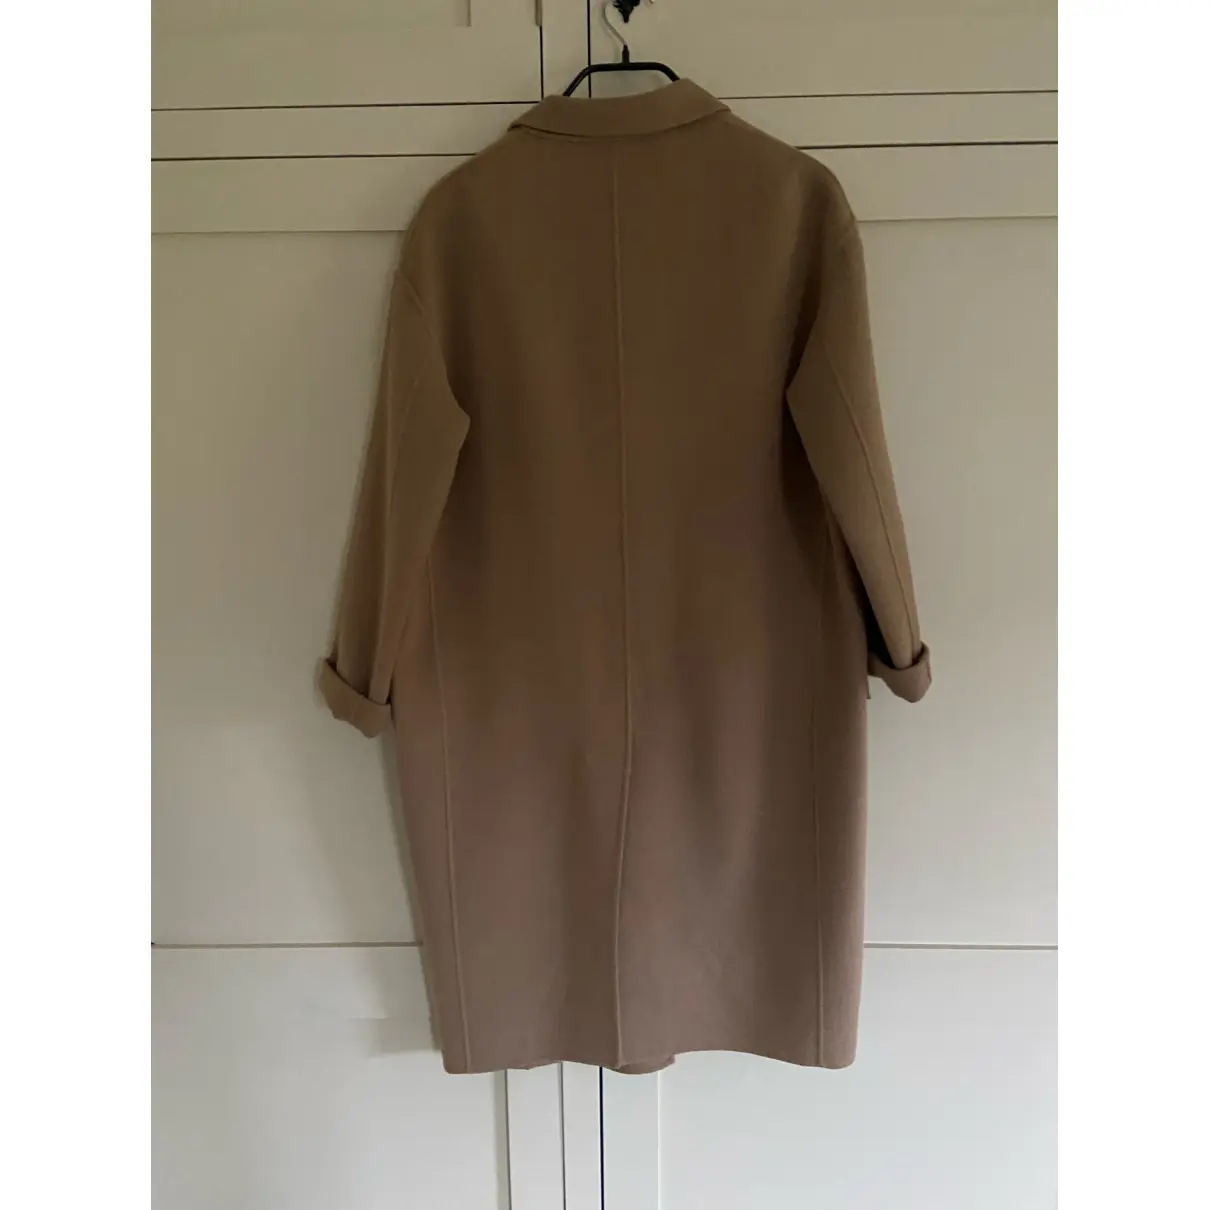 Buy Joseph Wool coat online